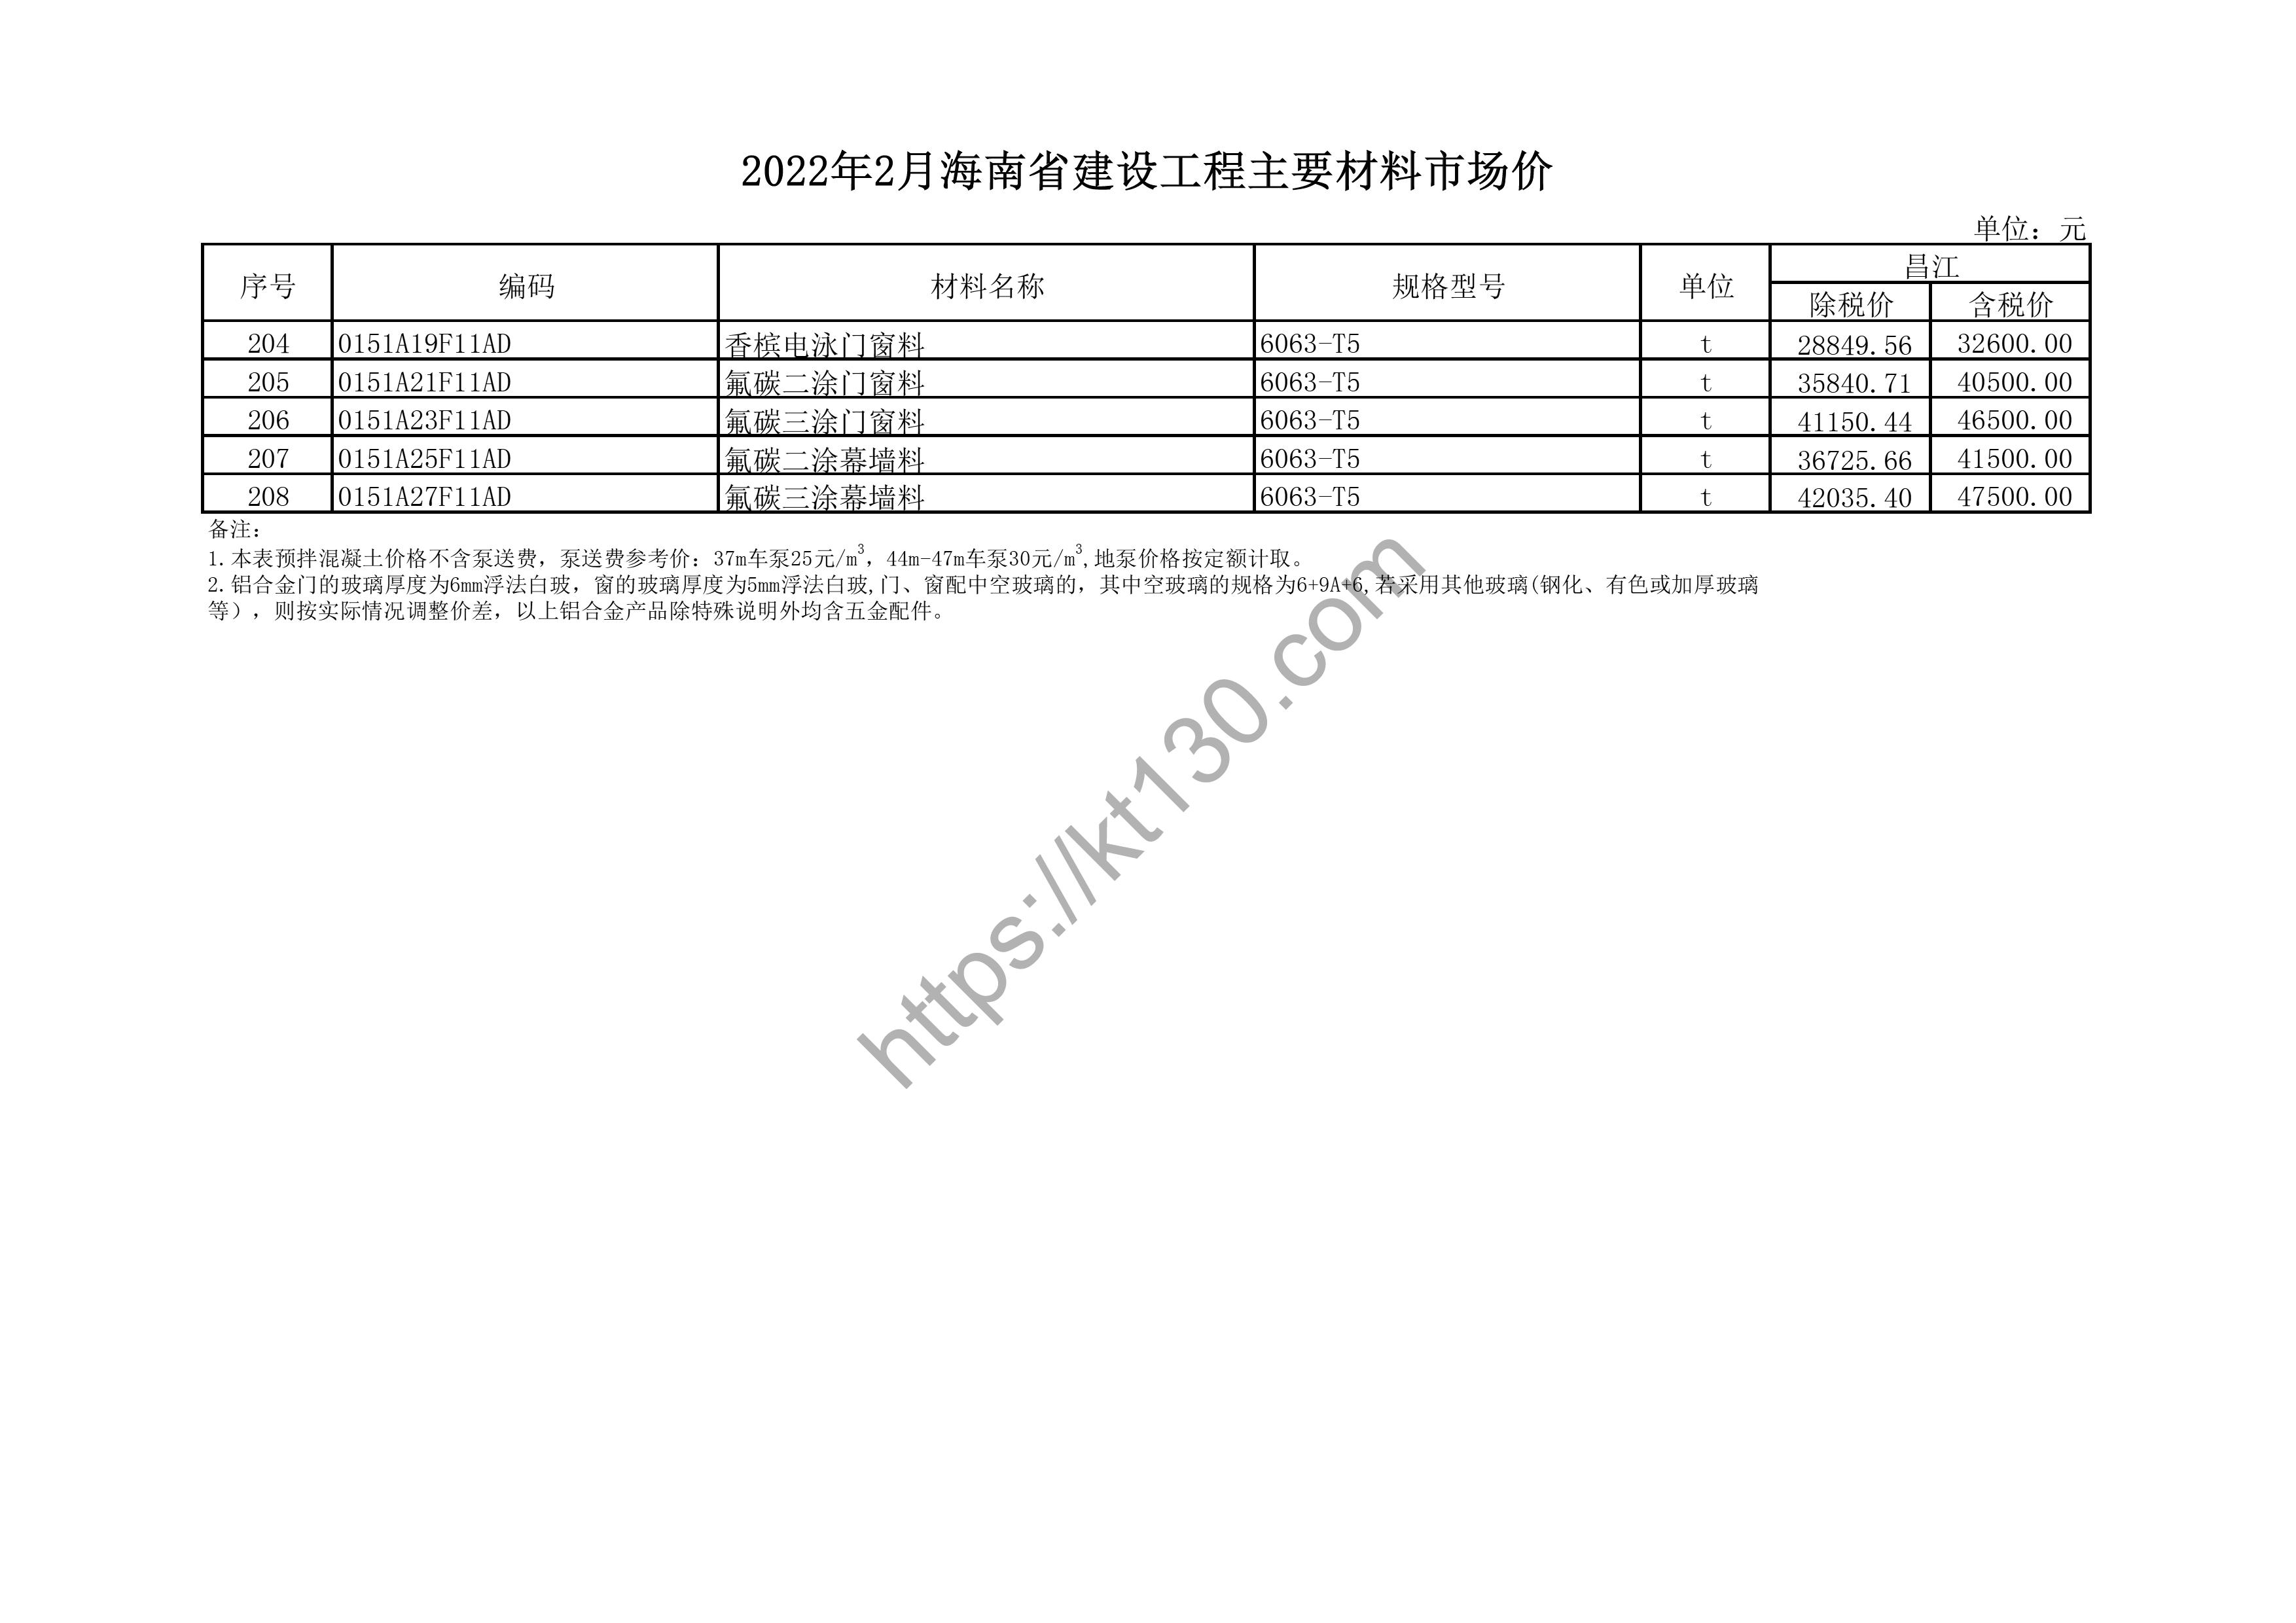 海南省2022年2月建筑材料价_钢带电缆_43908